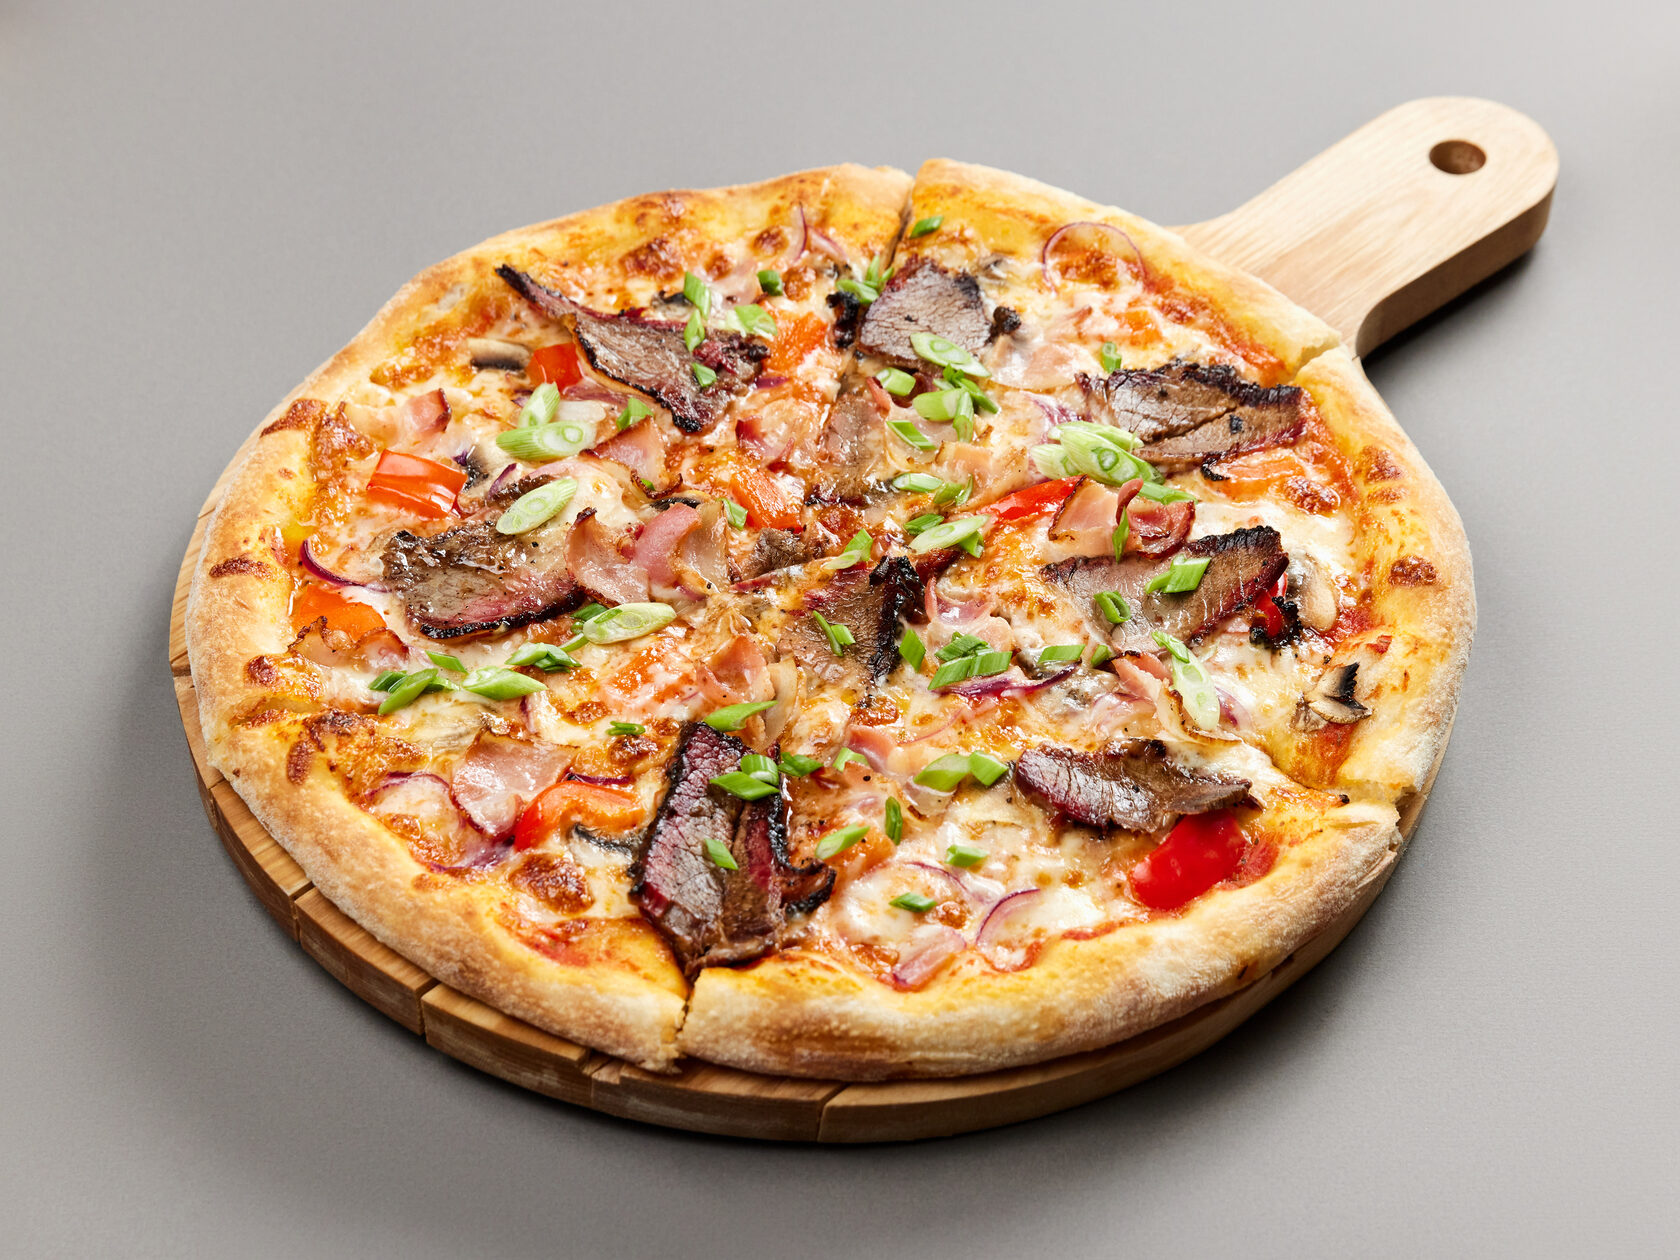 технологическая карта пиццы мясная фото 54